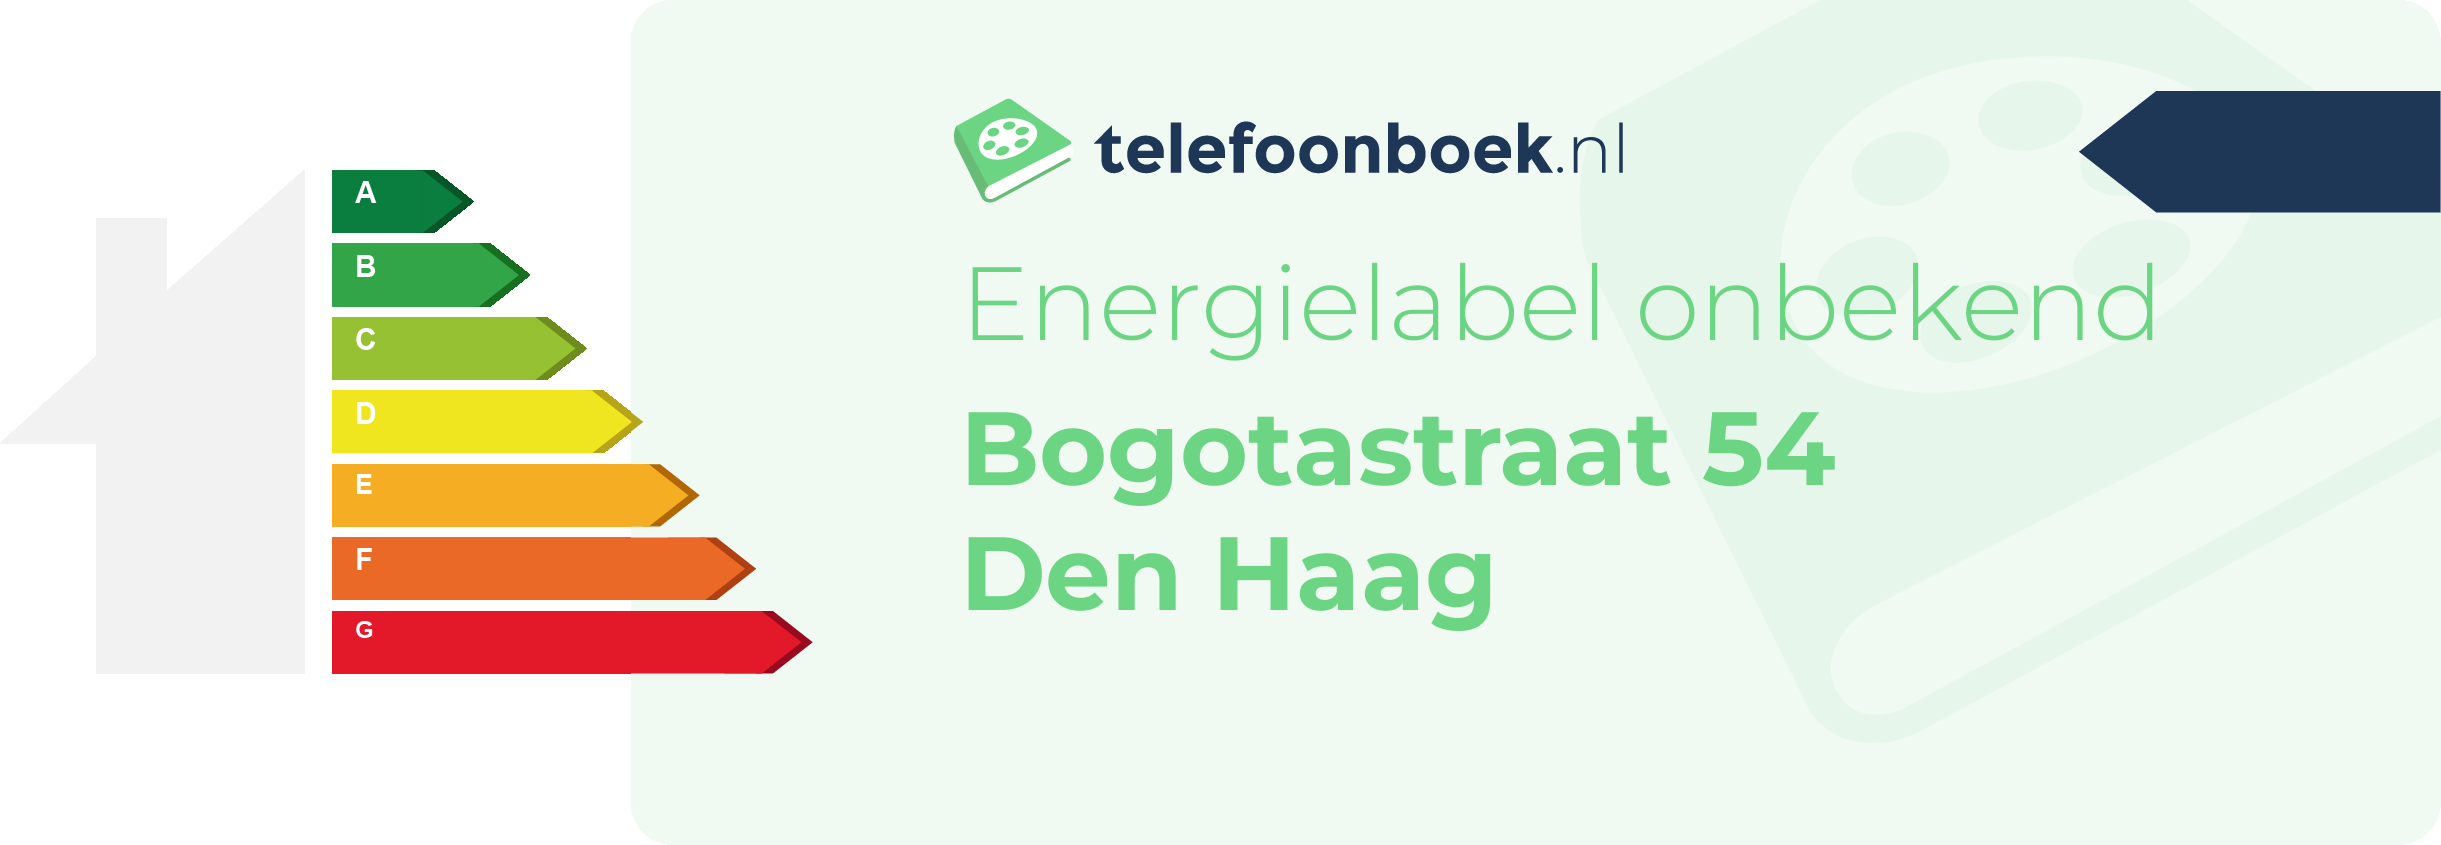 Energielabel Bogotastraat 54 Den Haag